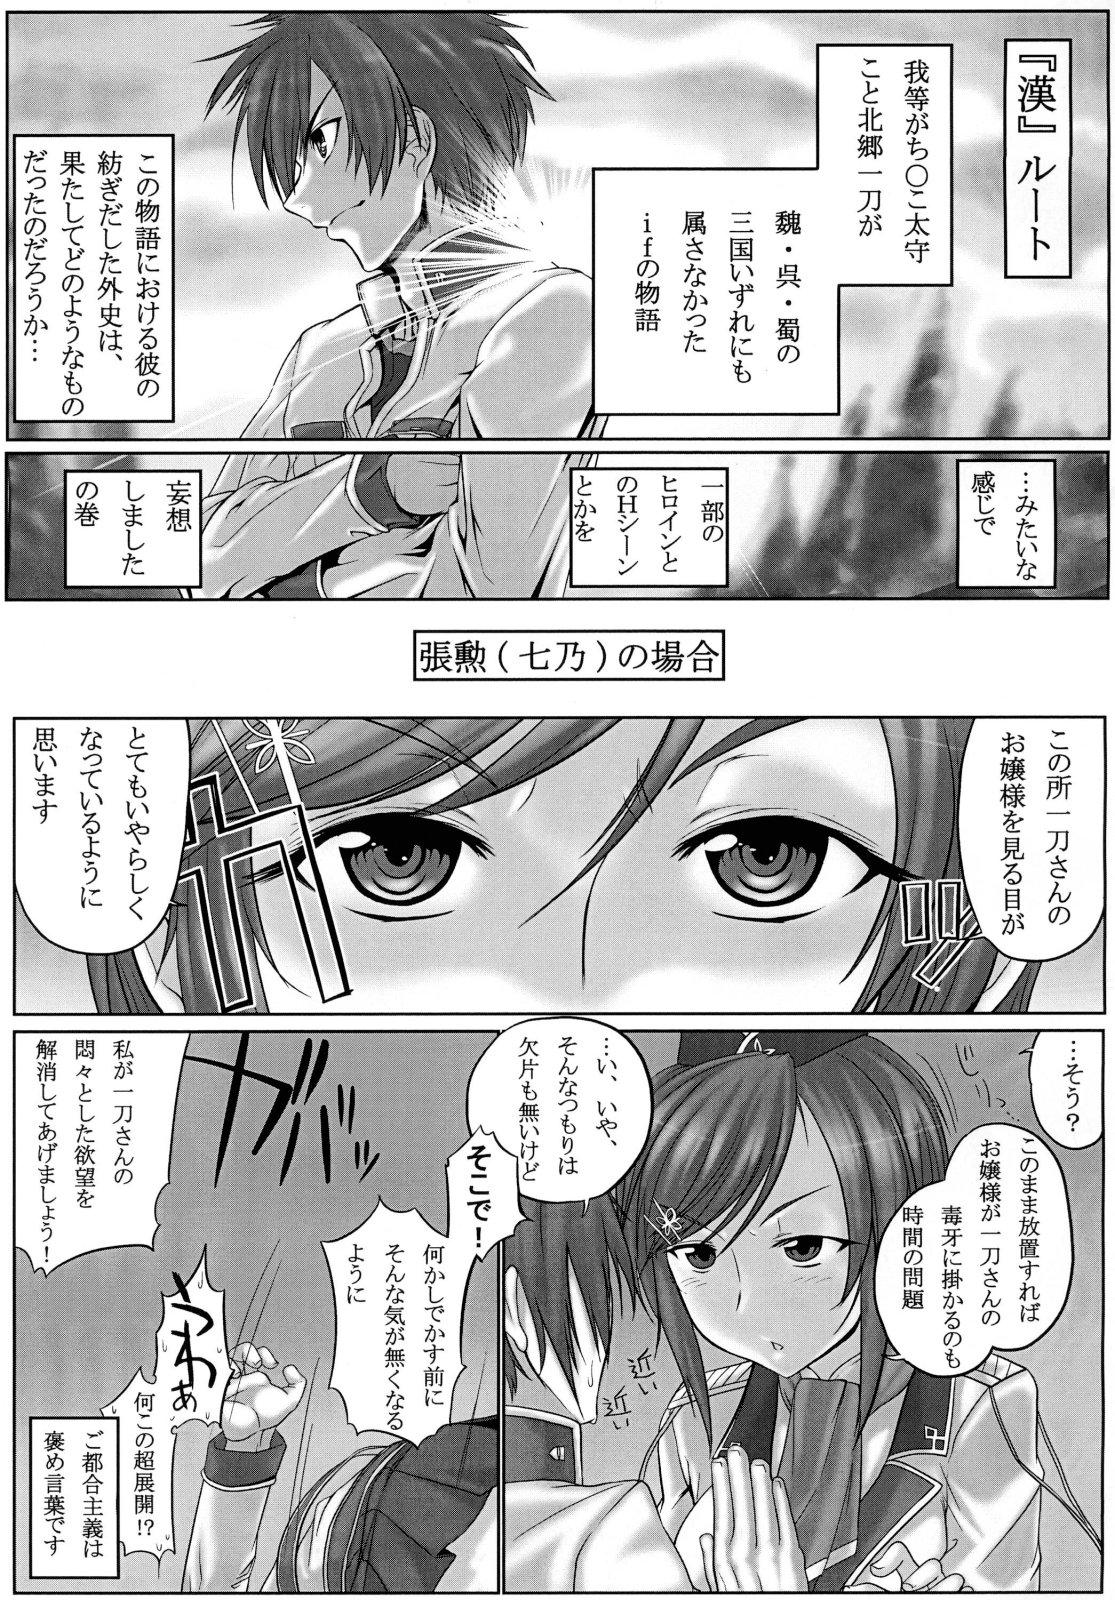 Men Shin Koihime † Masaka no Choice - Koihime musou Pinoy - Page 5